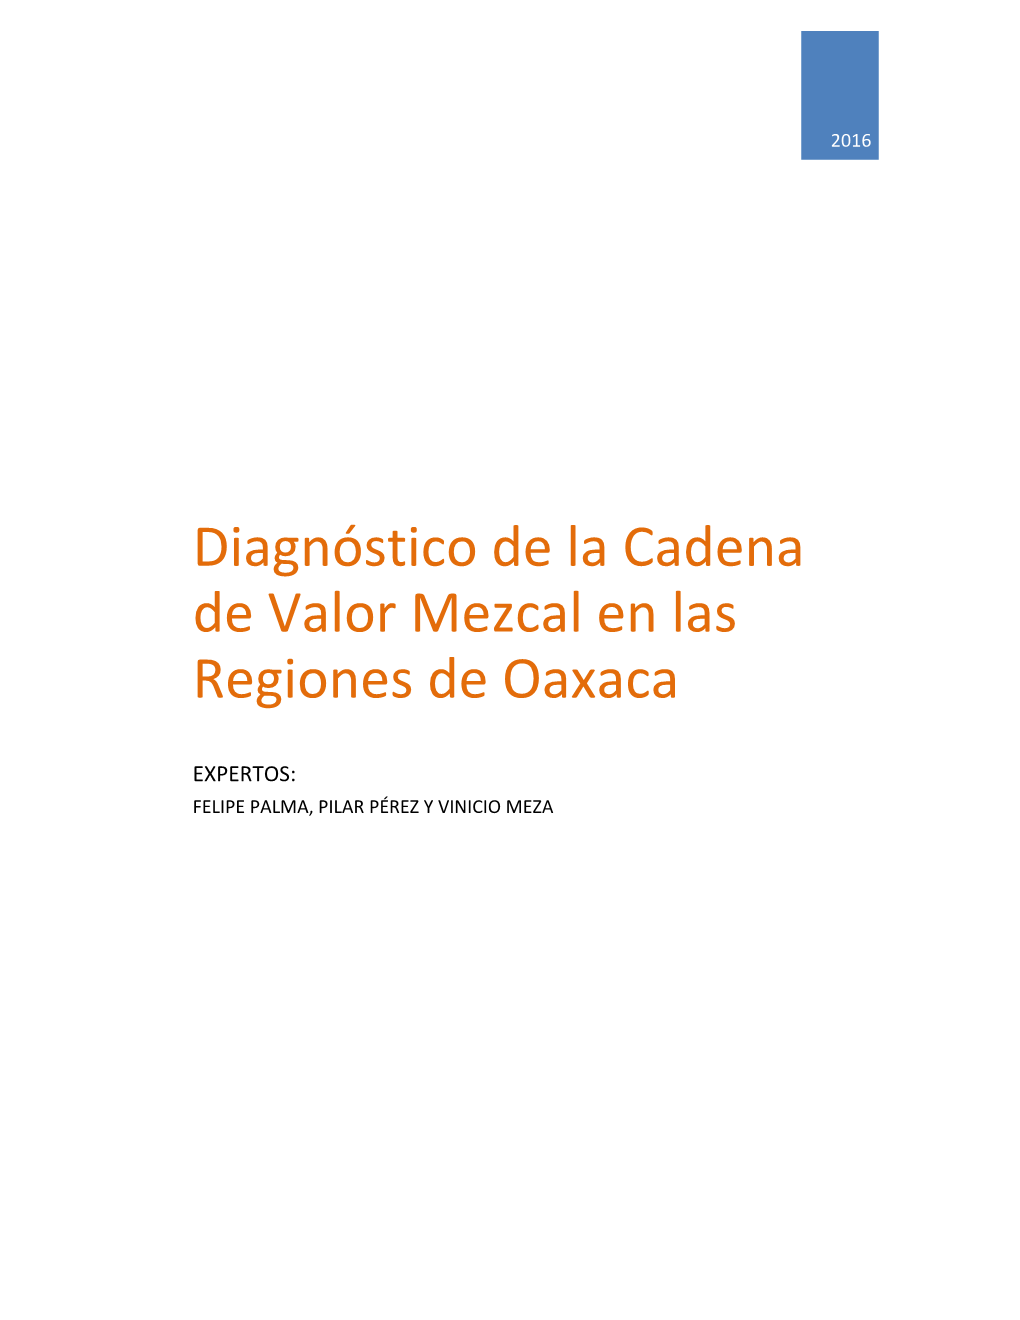 Diagnóstico De La Cadena De Valor Mezcal En Las Regiones De Oaxaca